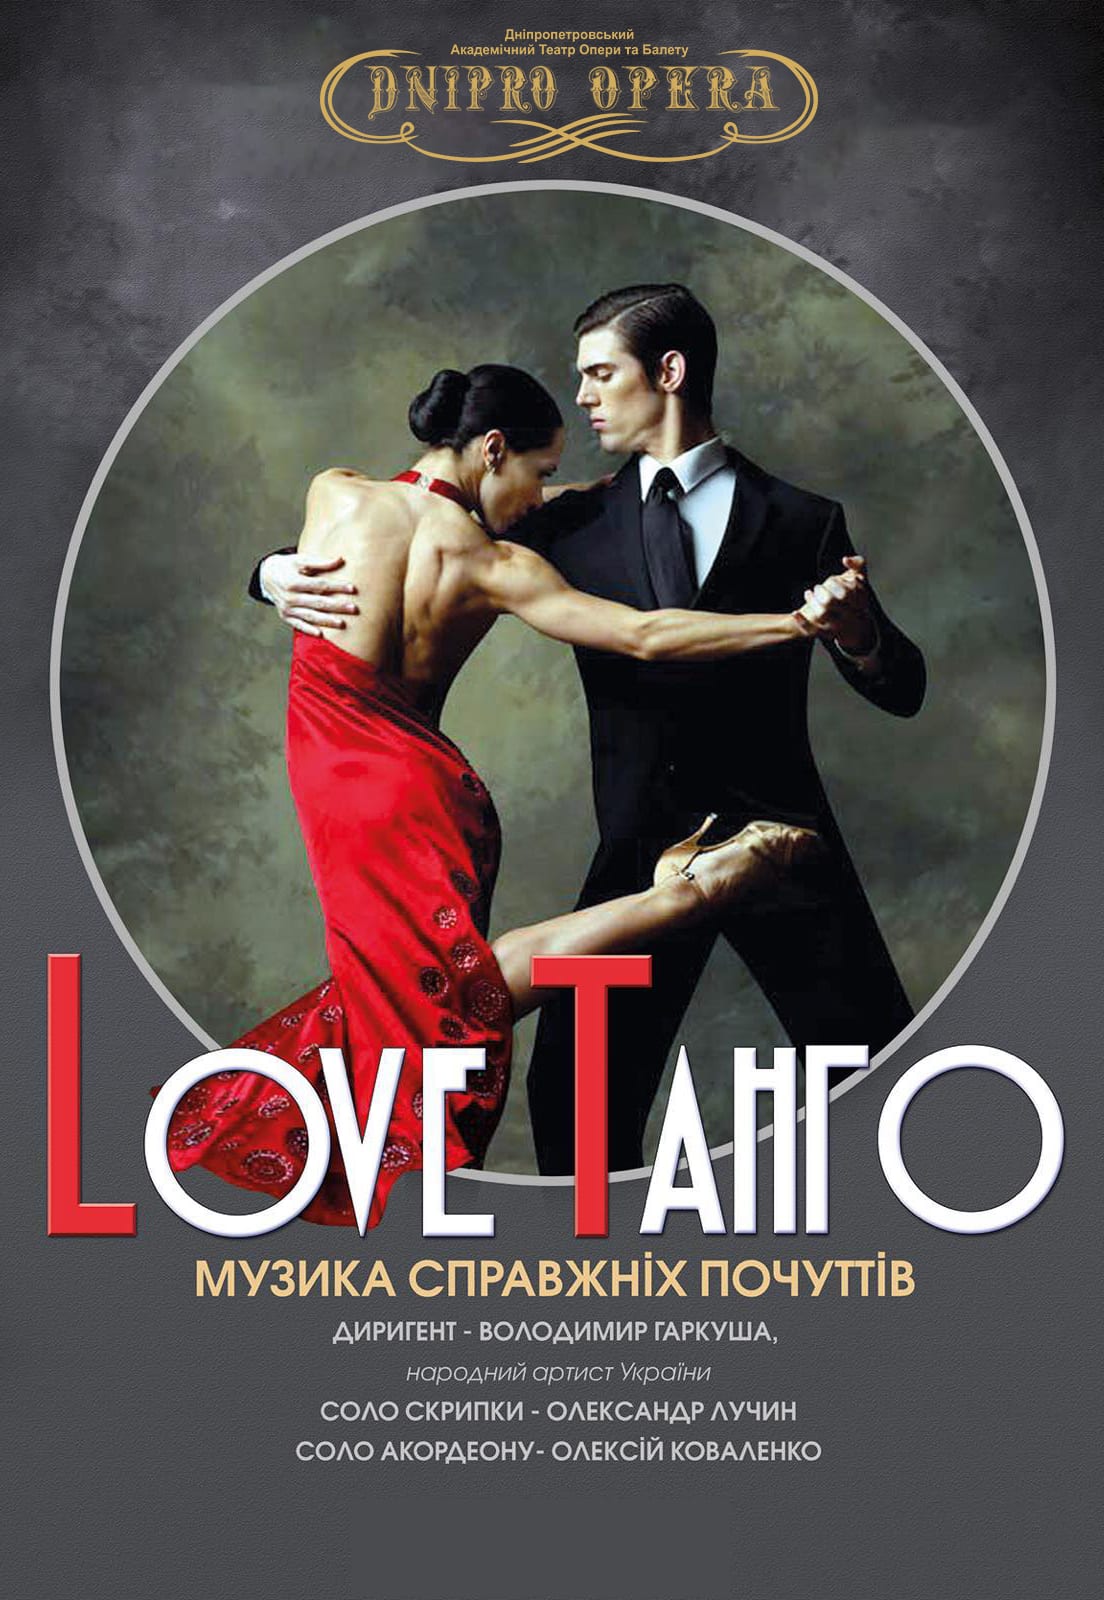 Love Танго Днепр, 29.01.2021, цена, расписание, купить билеты. Афиша Днепра